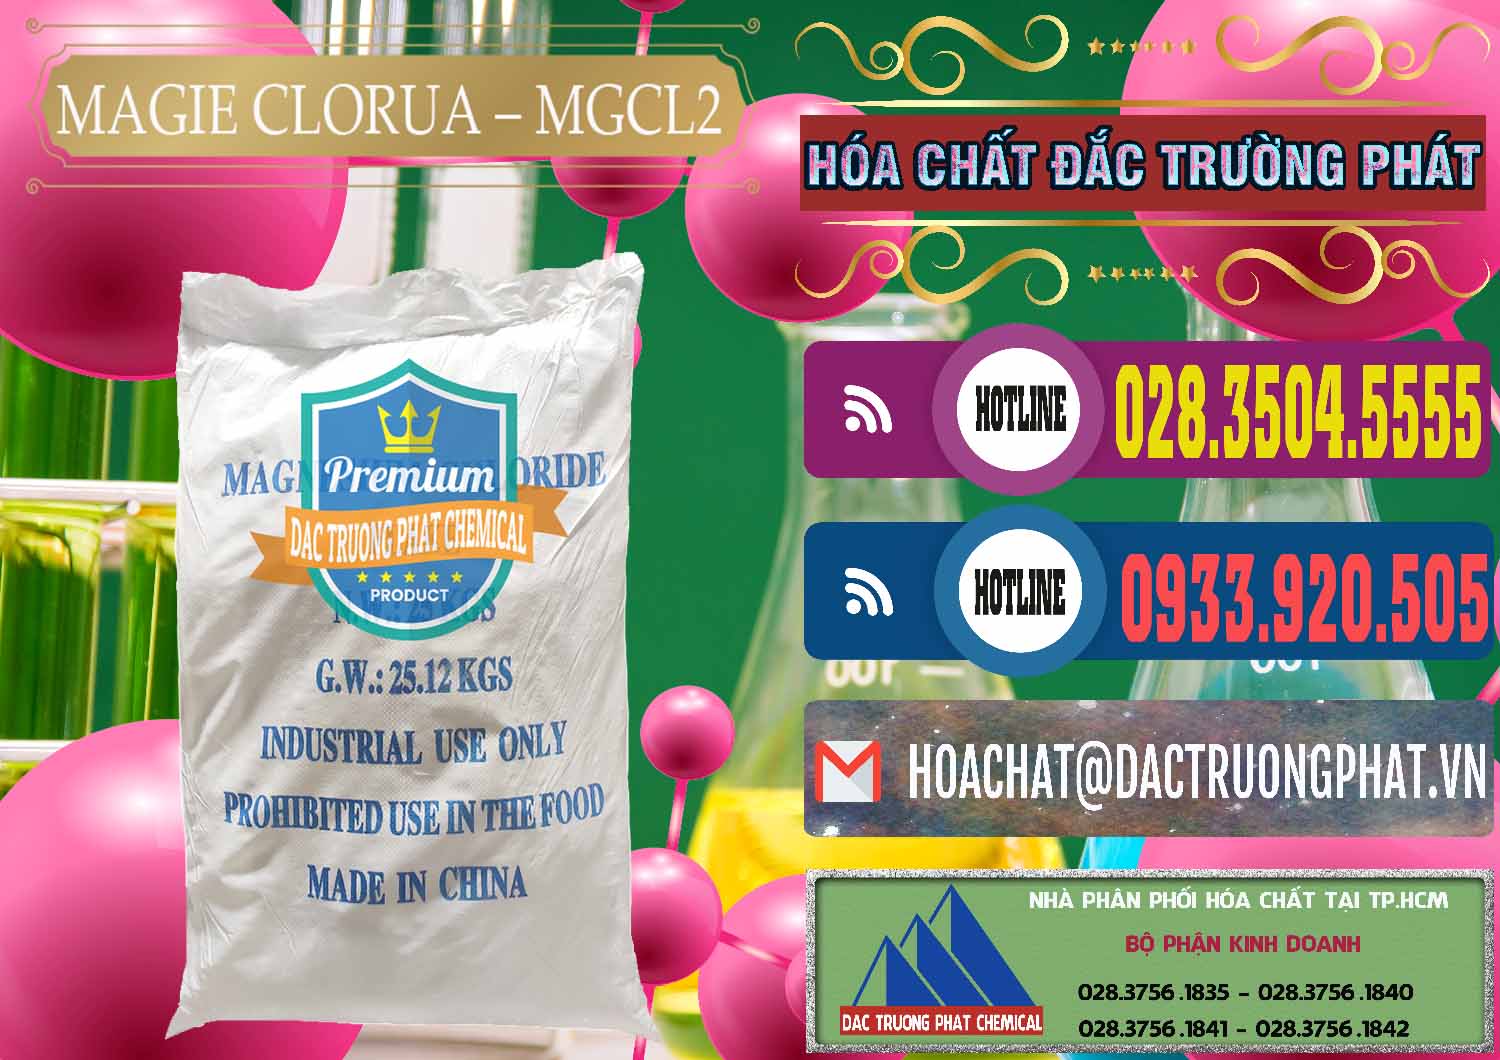 Cty chuyên nhập khẩu & bán Magie Clorua – MGCL2 96% Dạng Vảy Trung Quốc China - 0091 - Đơn vị chuyên phân phối & cung ứng hóa chất tại TP.HCM - muabanhoachat.com.vn